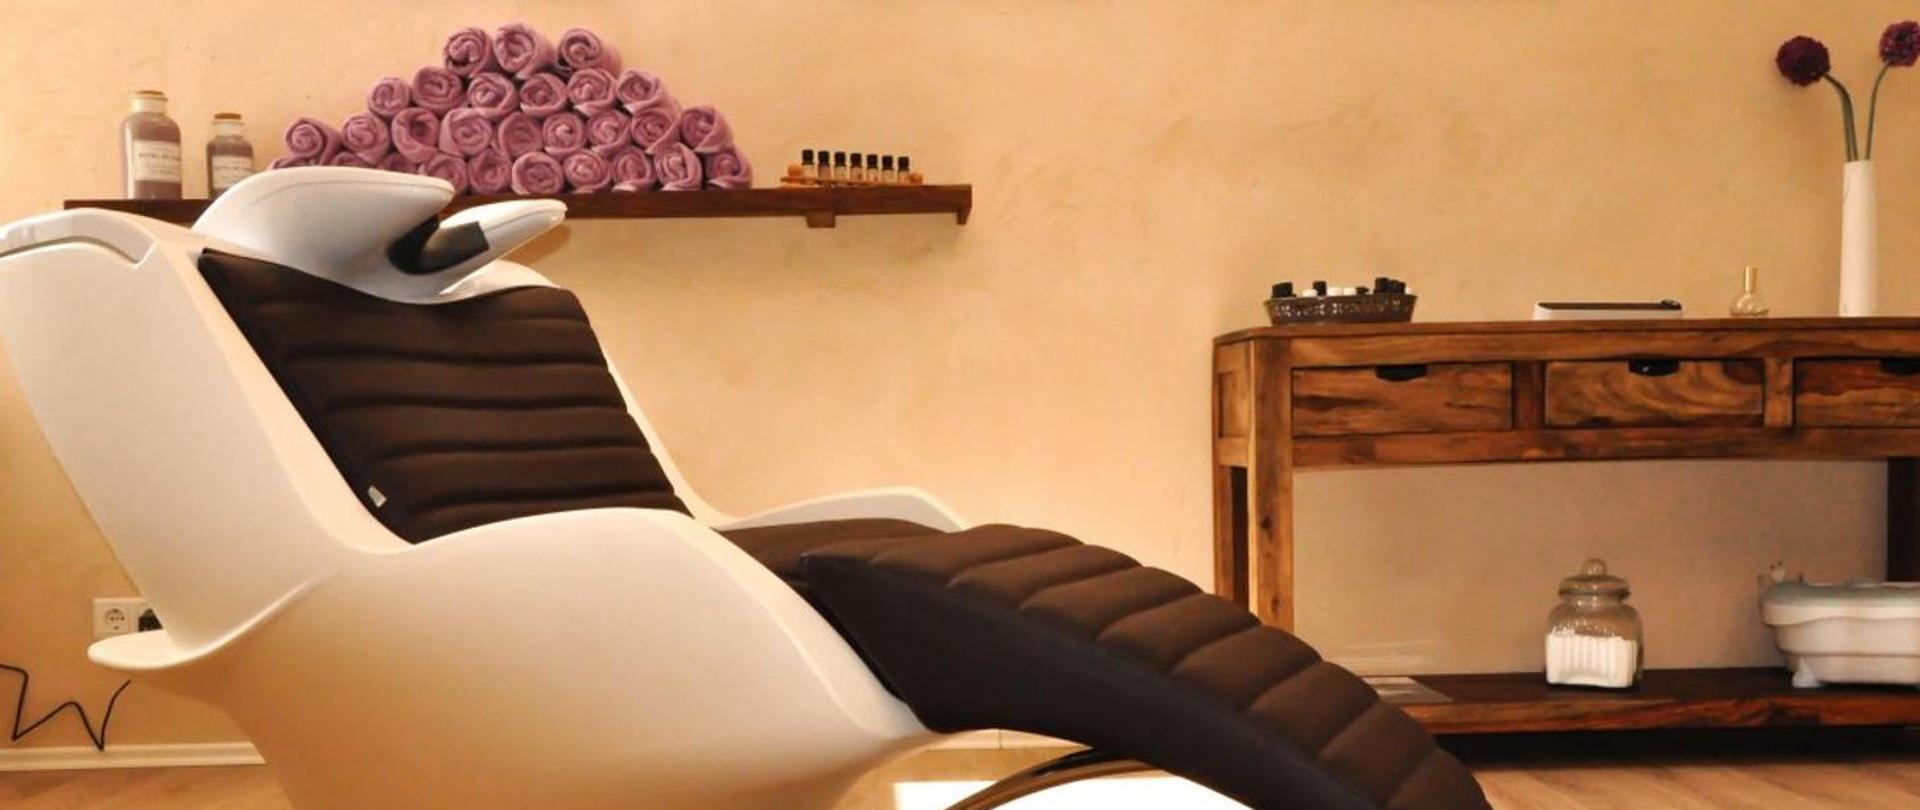 Zdjęcie obrazujące typowe pomieszczenie salonu kosmetycznego- fotel- meble i półka z kosmetykami i ręcznikami do wykonywania usług w zakresie branży beauty